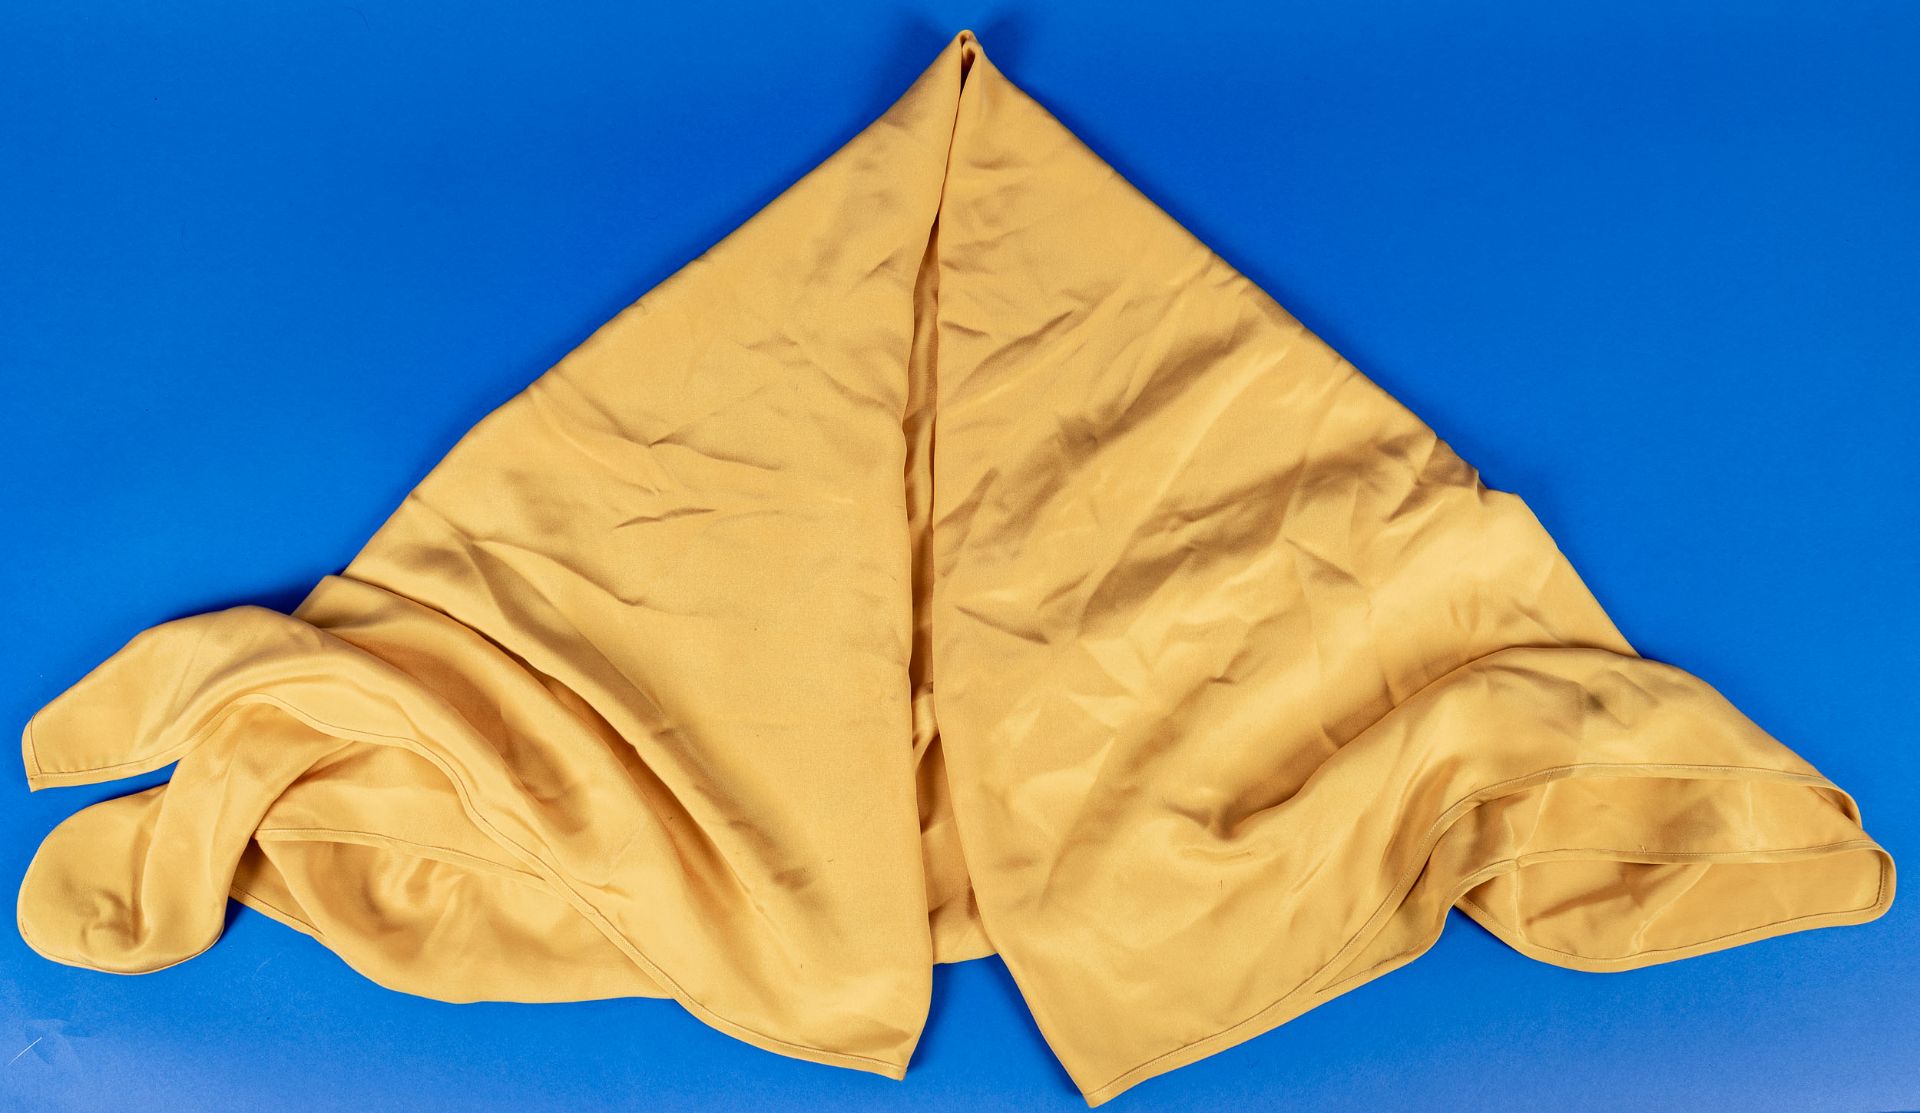 Sehr großes, gold-gelbes Tuch aus dem Hause Laura Biagotti, 100% Seide, ca. 140 x 140 cm; sehr schö - Bild 3 aus 3